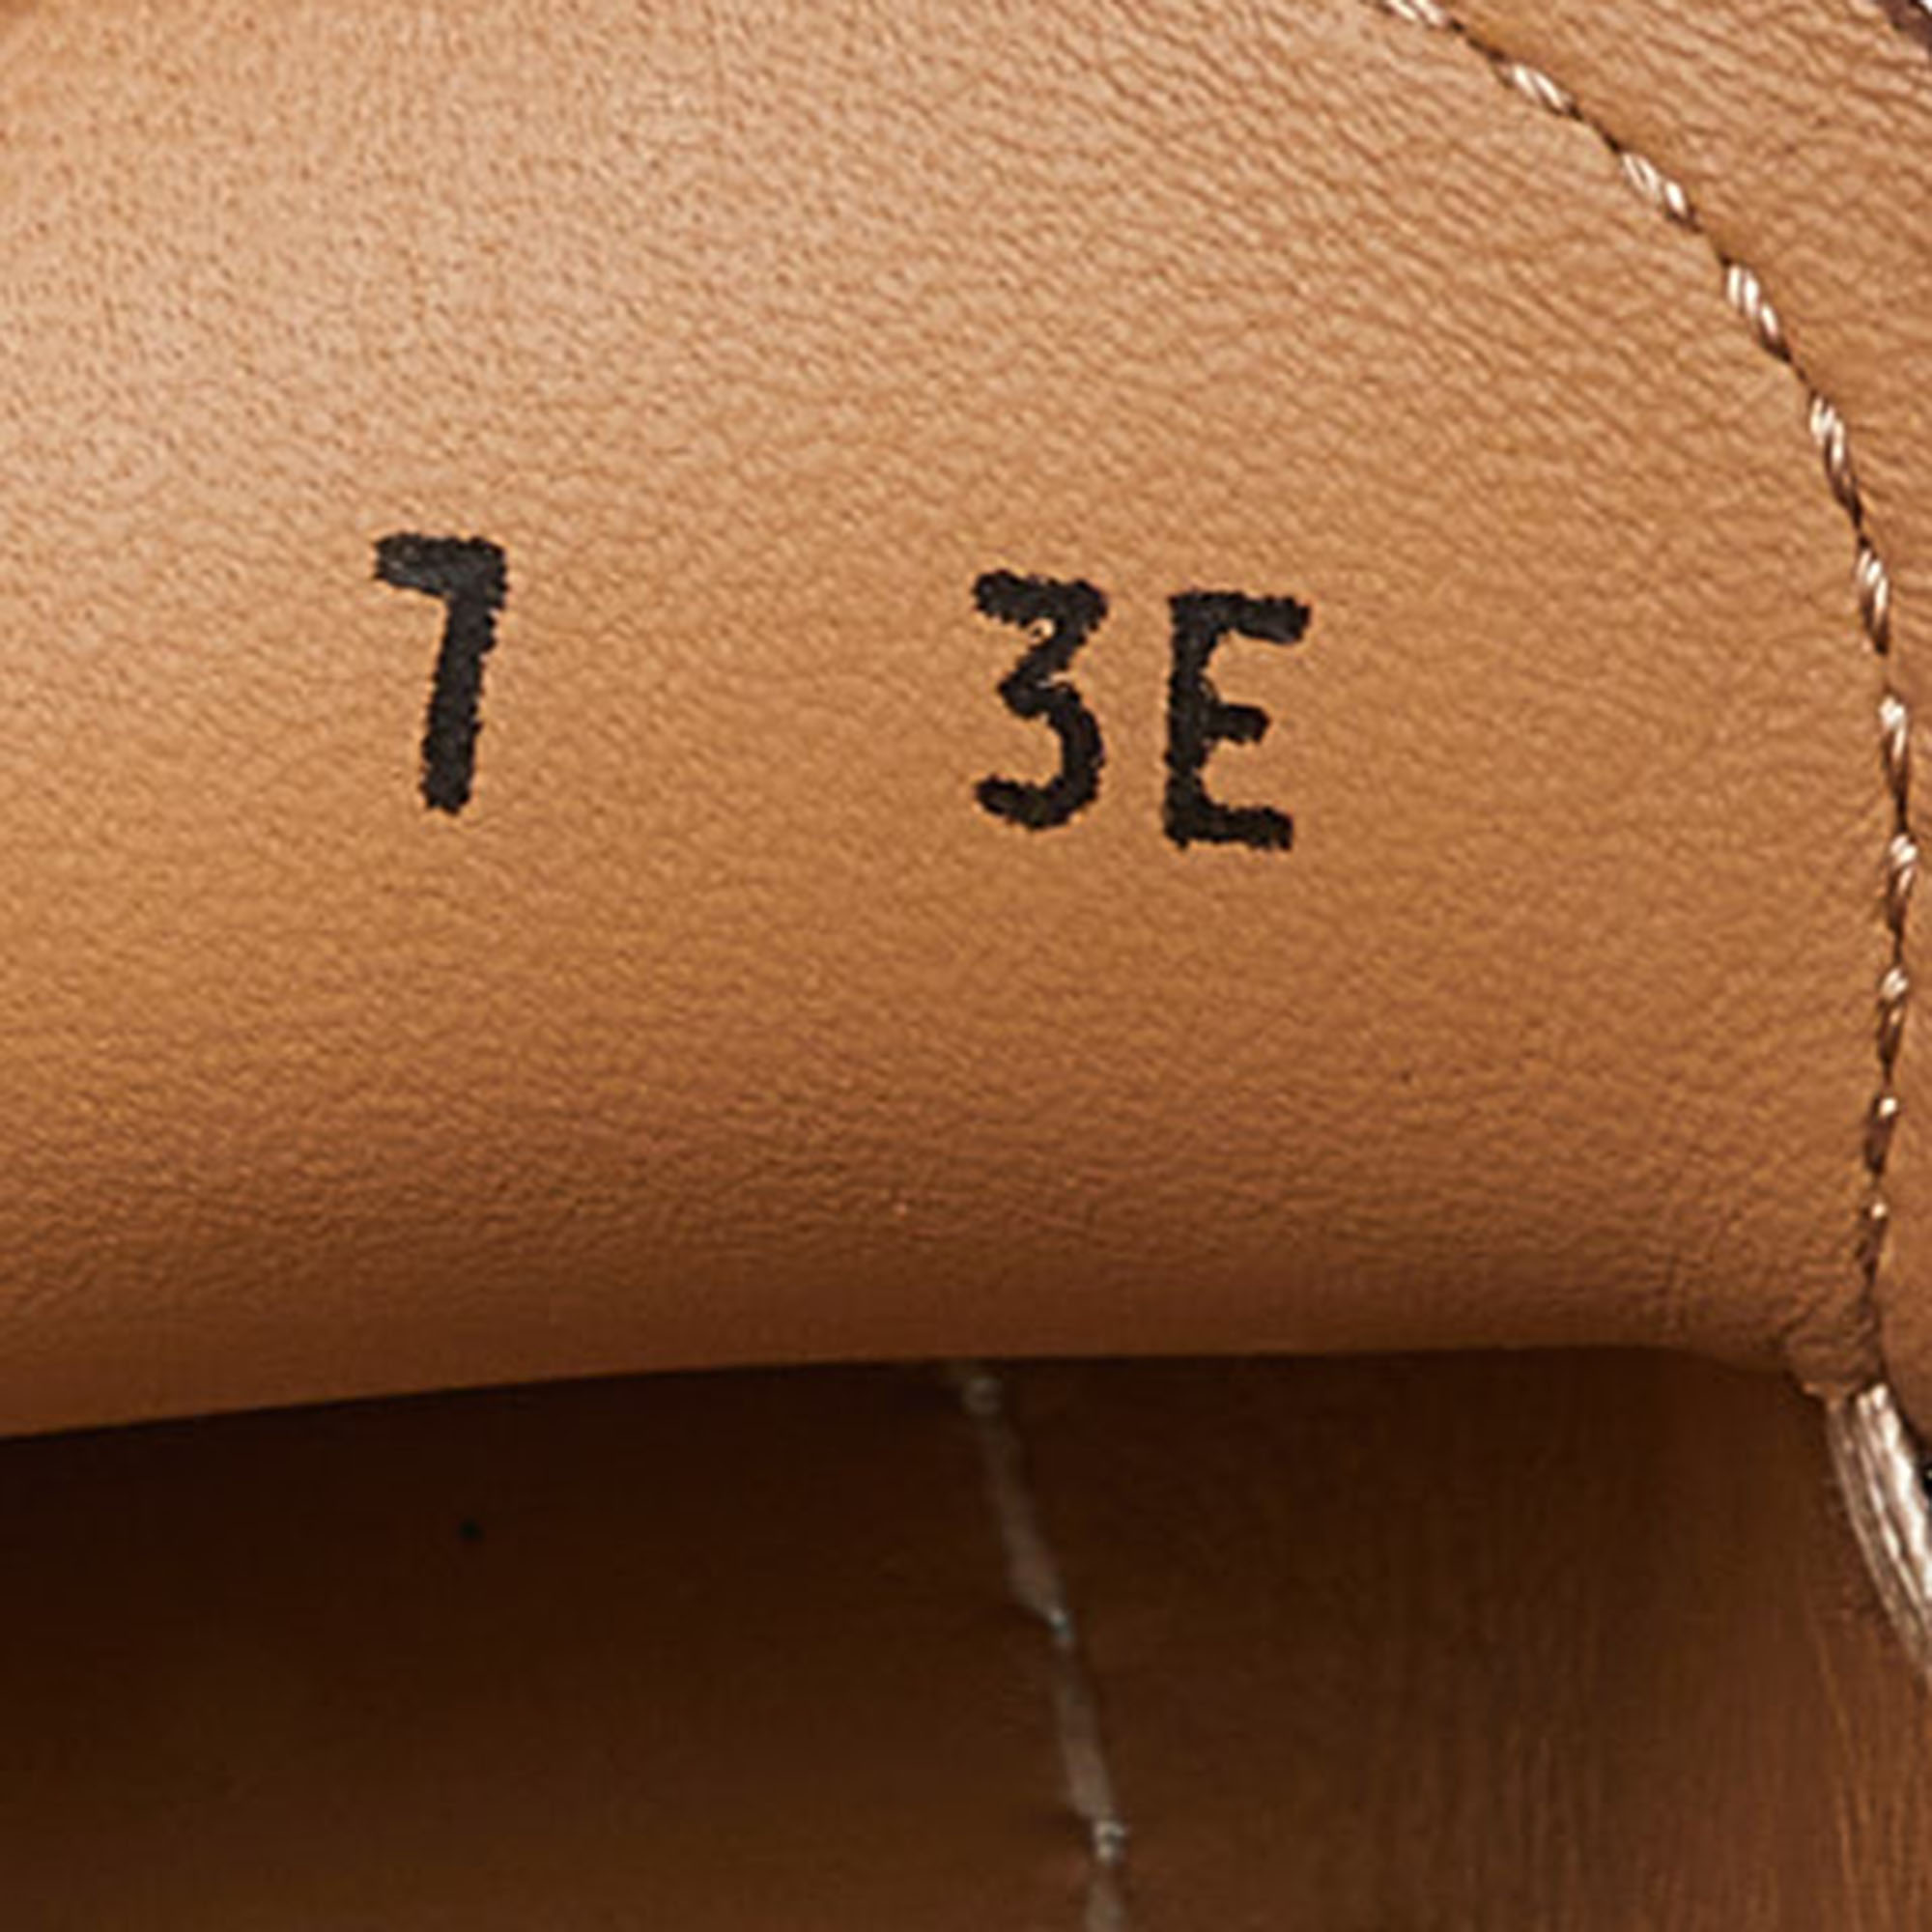 Salvatore Ferragamo Brown Leather Gancini Loafers Size 41